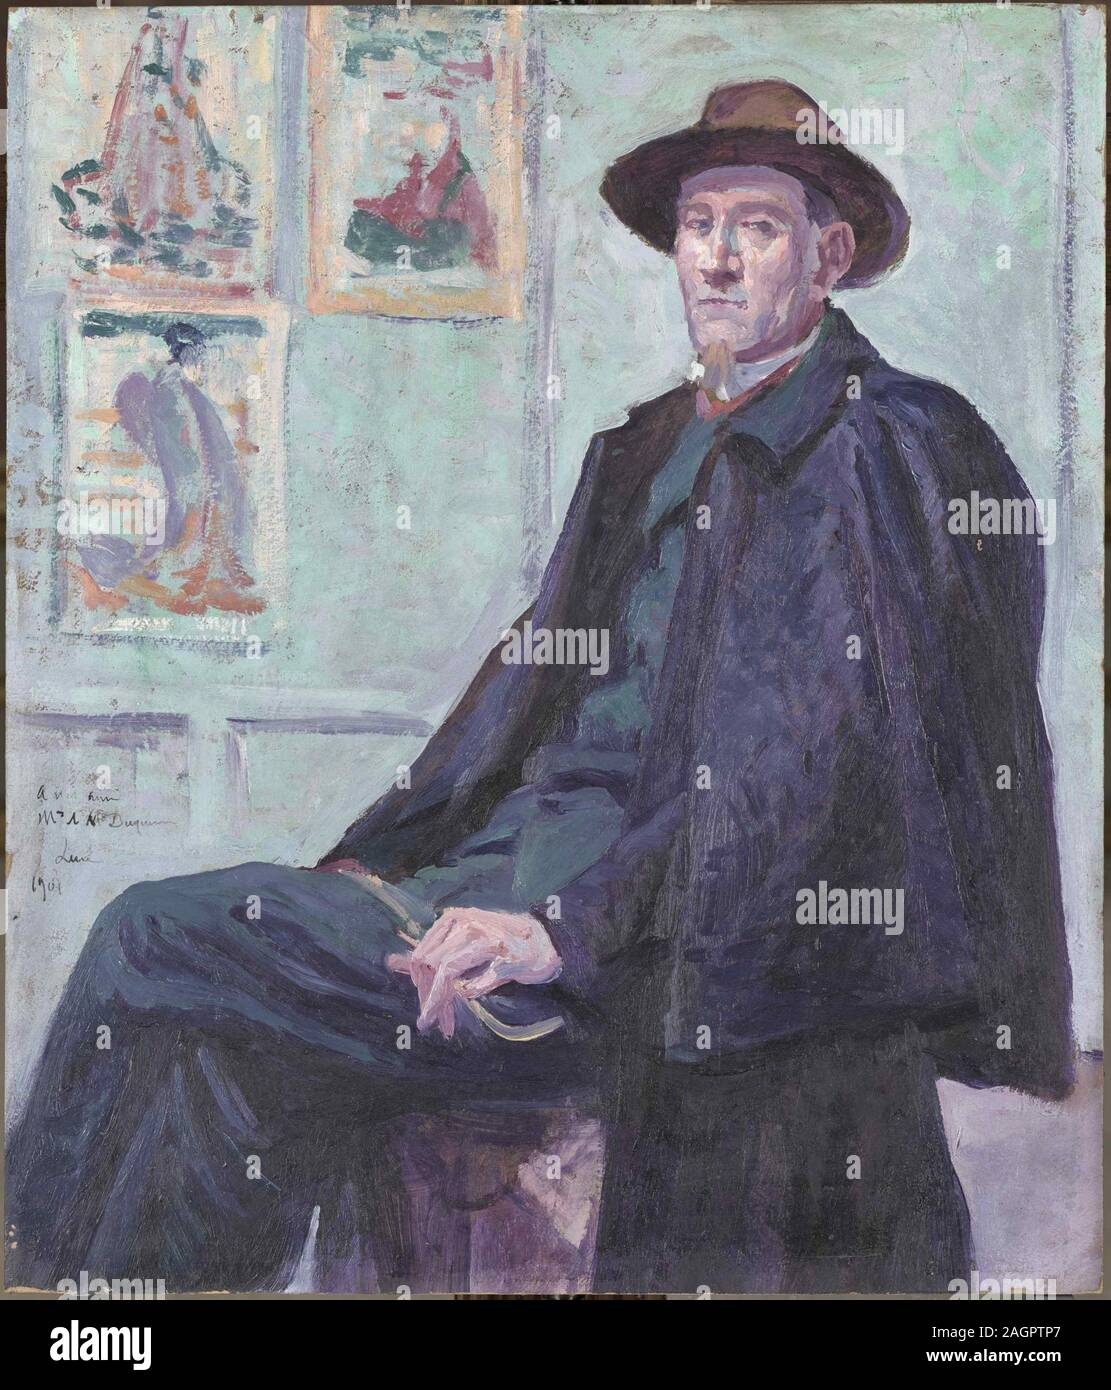 Portrait of Félix Fénéon. Museum: Musée d'Orsay, Paris. Author: MAXIMILIEN LUCE. Stock Photo